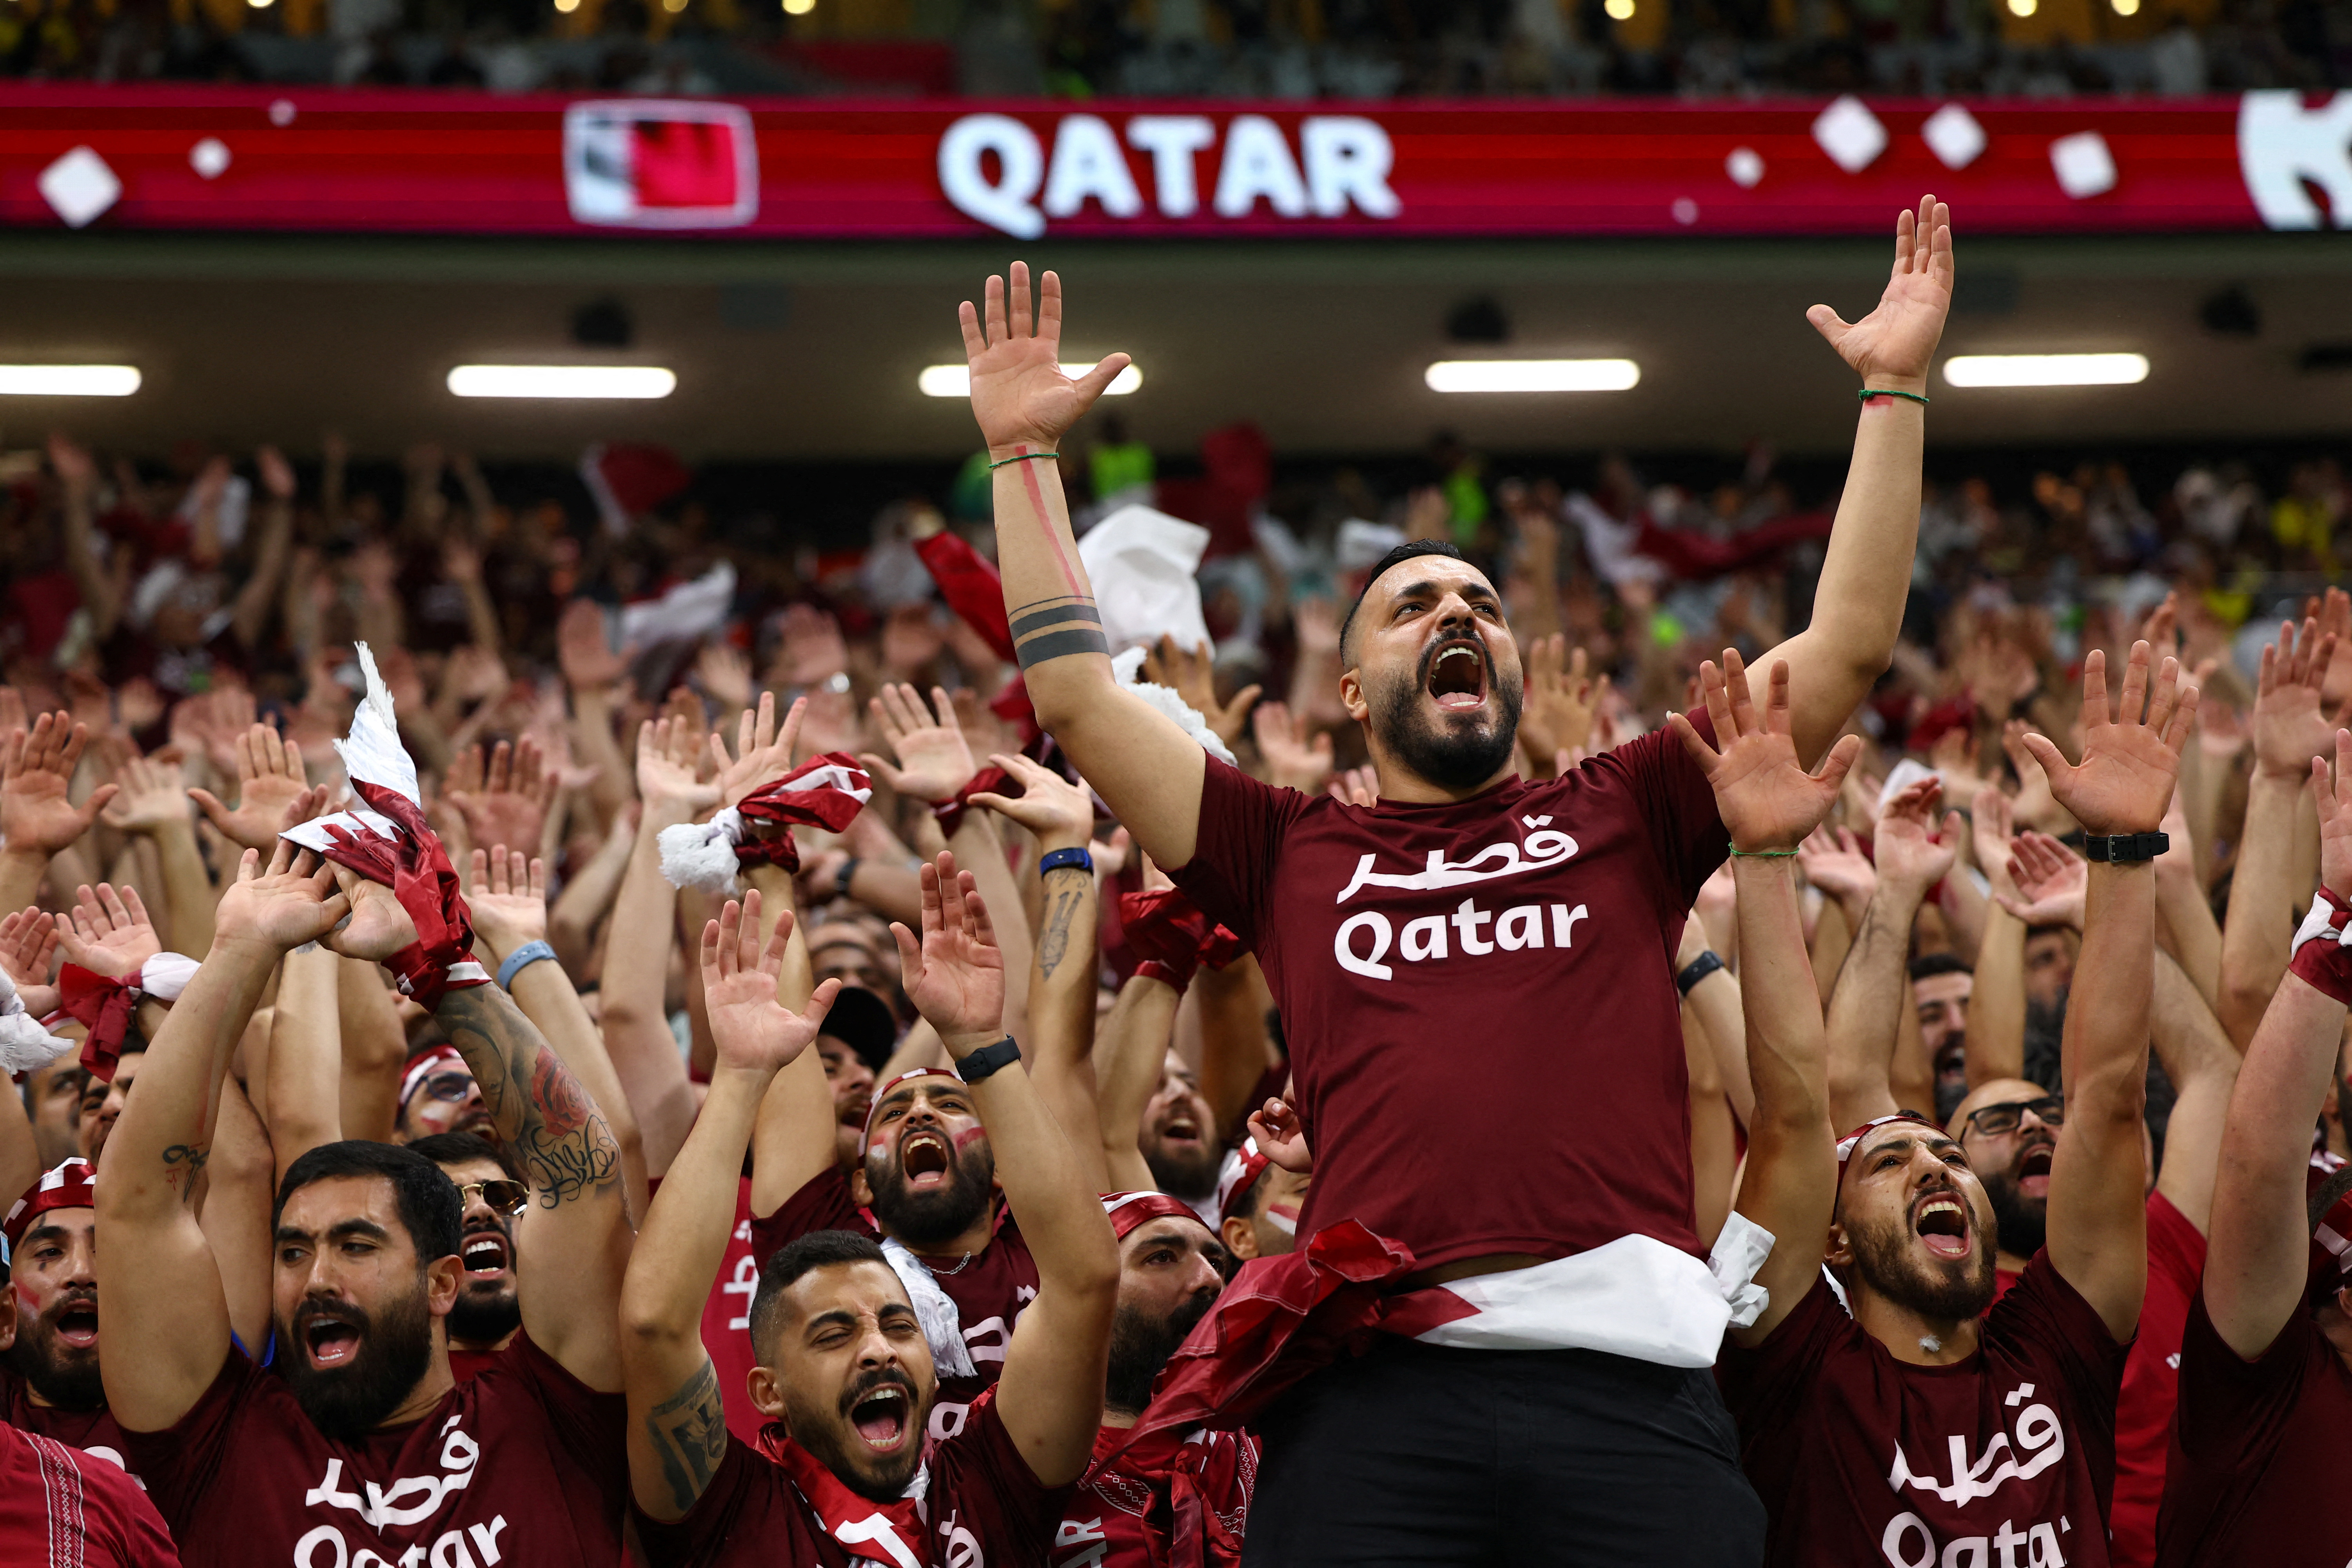 La "barra" de Qatar se vistió con la misma indumentaria. Y consiguió pasar dos bombos, a pesar de que las autoridades les retiraban hasta las golosinas a los concurrentes (REUTERS/Kai Pfaffenbach)